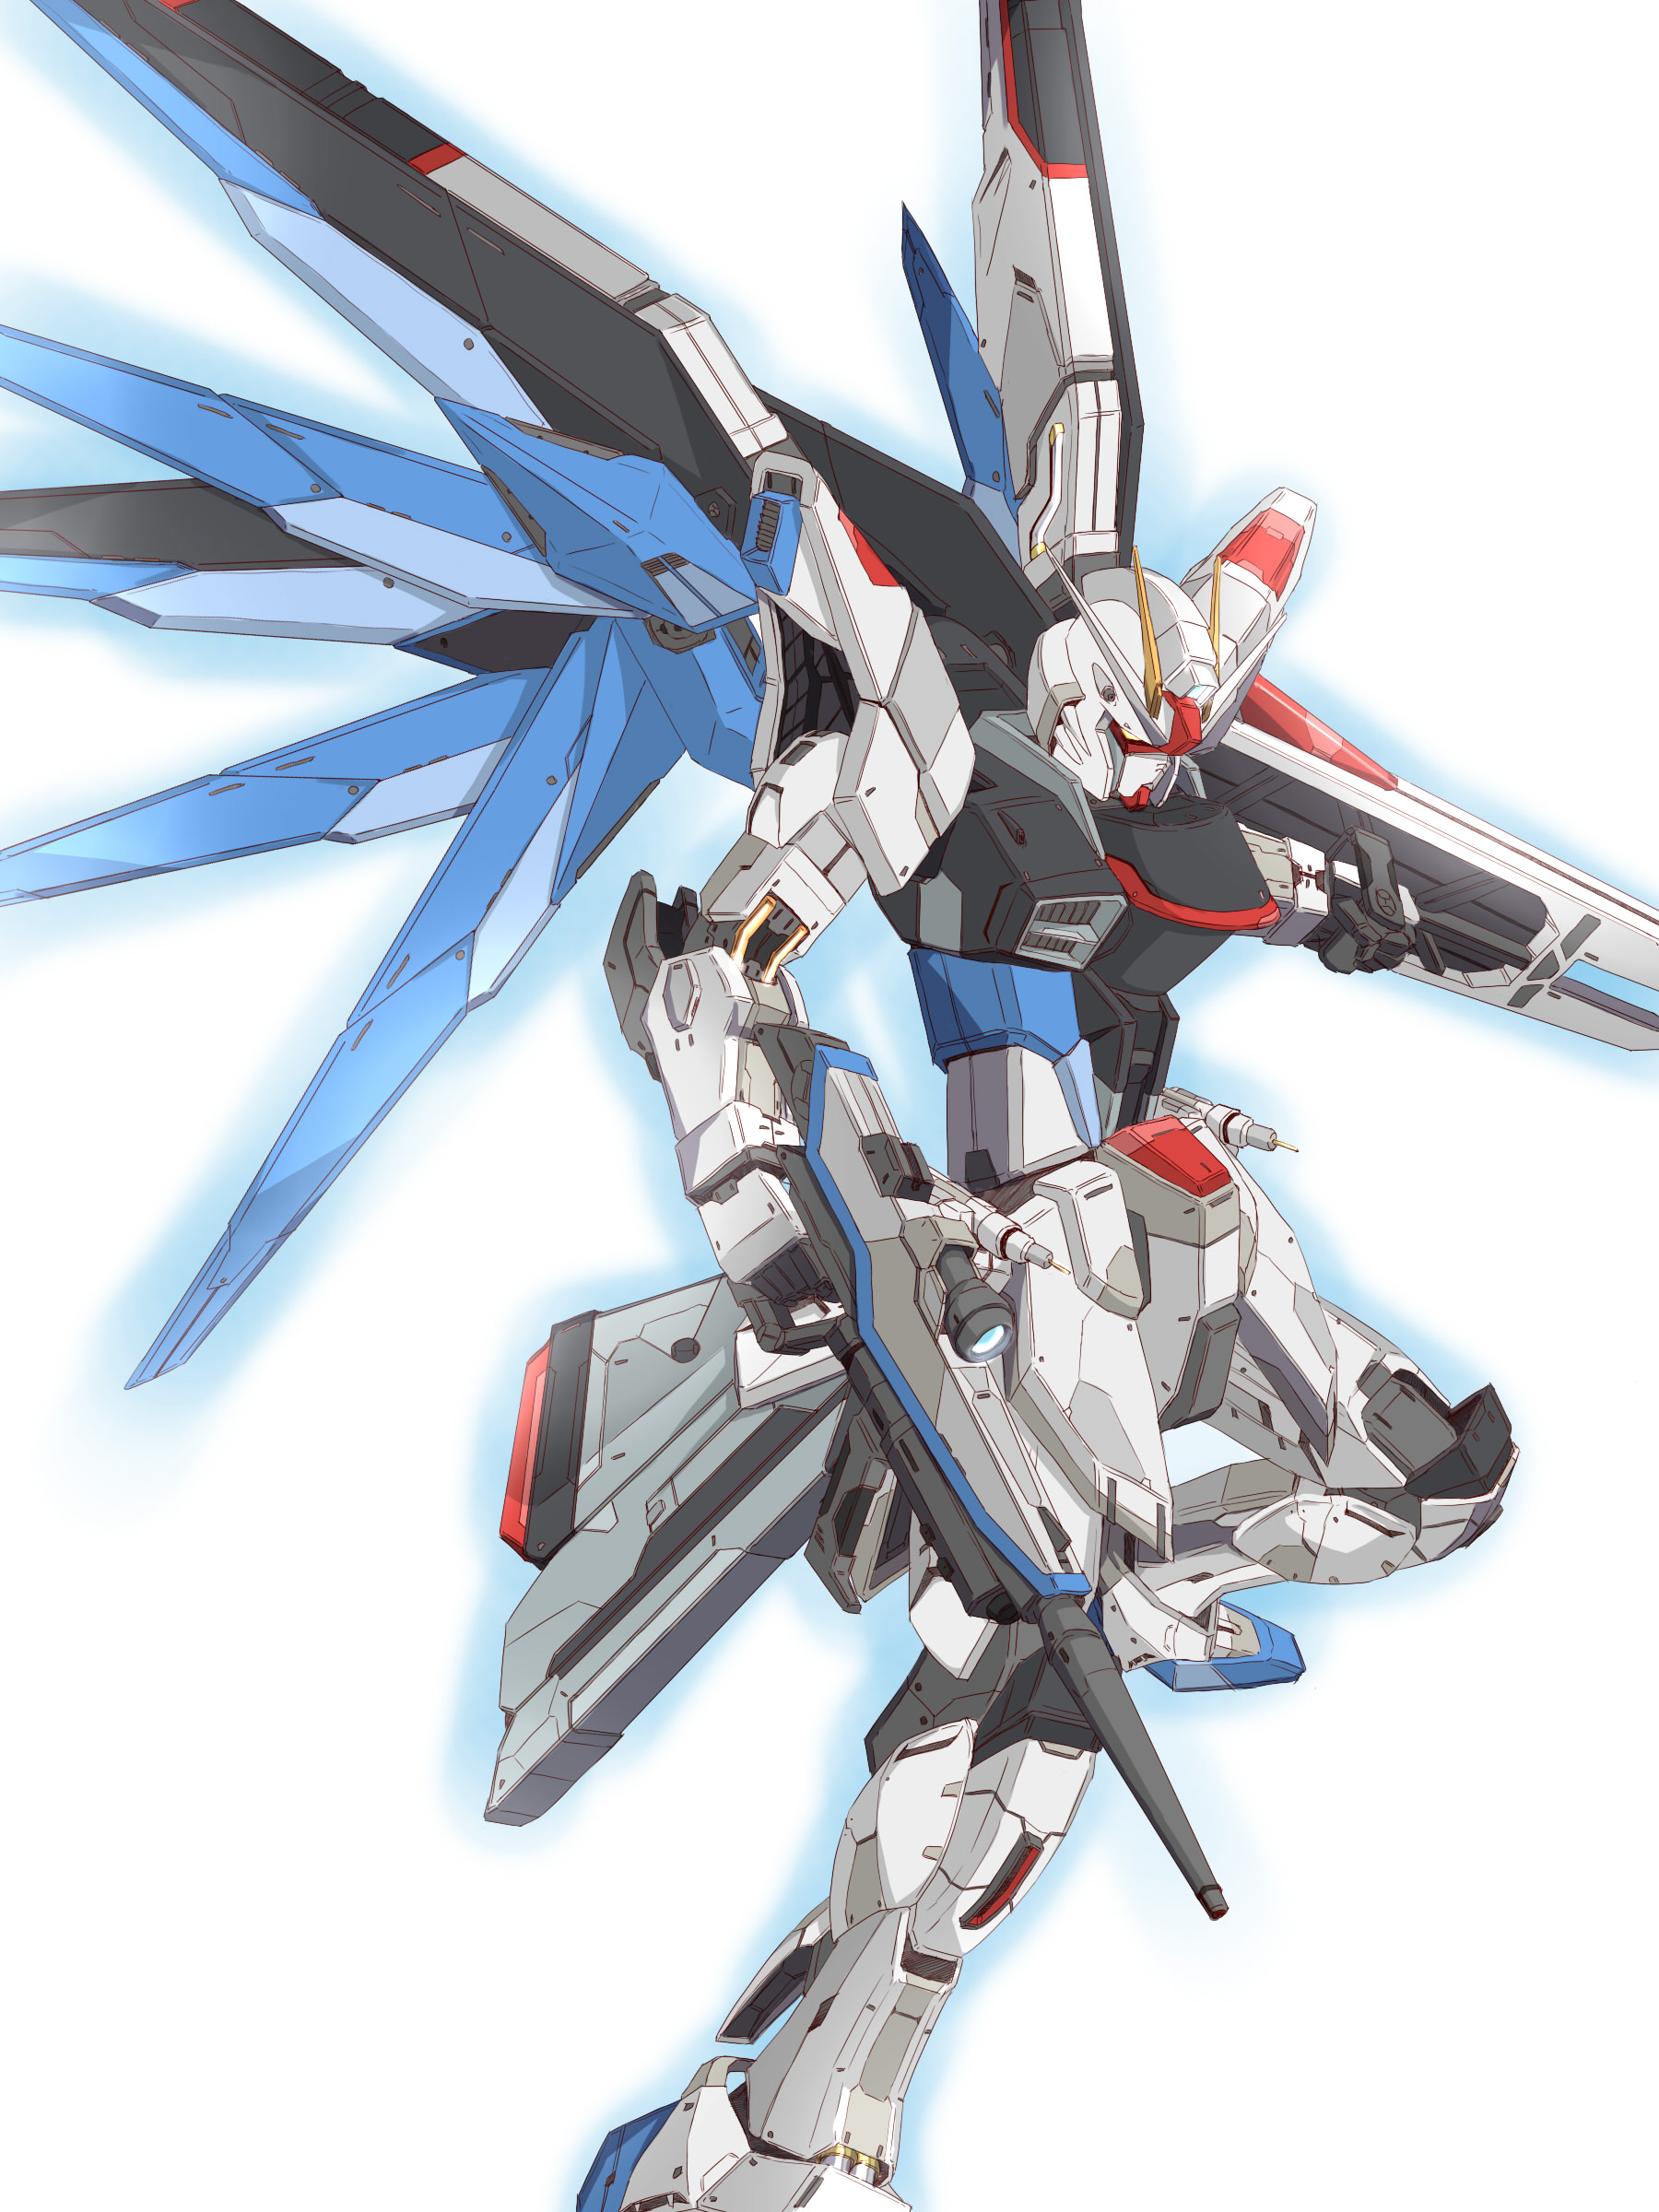 Anime Mechs Super Robot Taisen Mobile Suit Gundam SEED Gundam Artwork Freedom Gundam Fan Art Digital 1800x2400